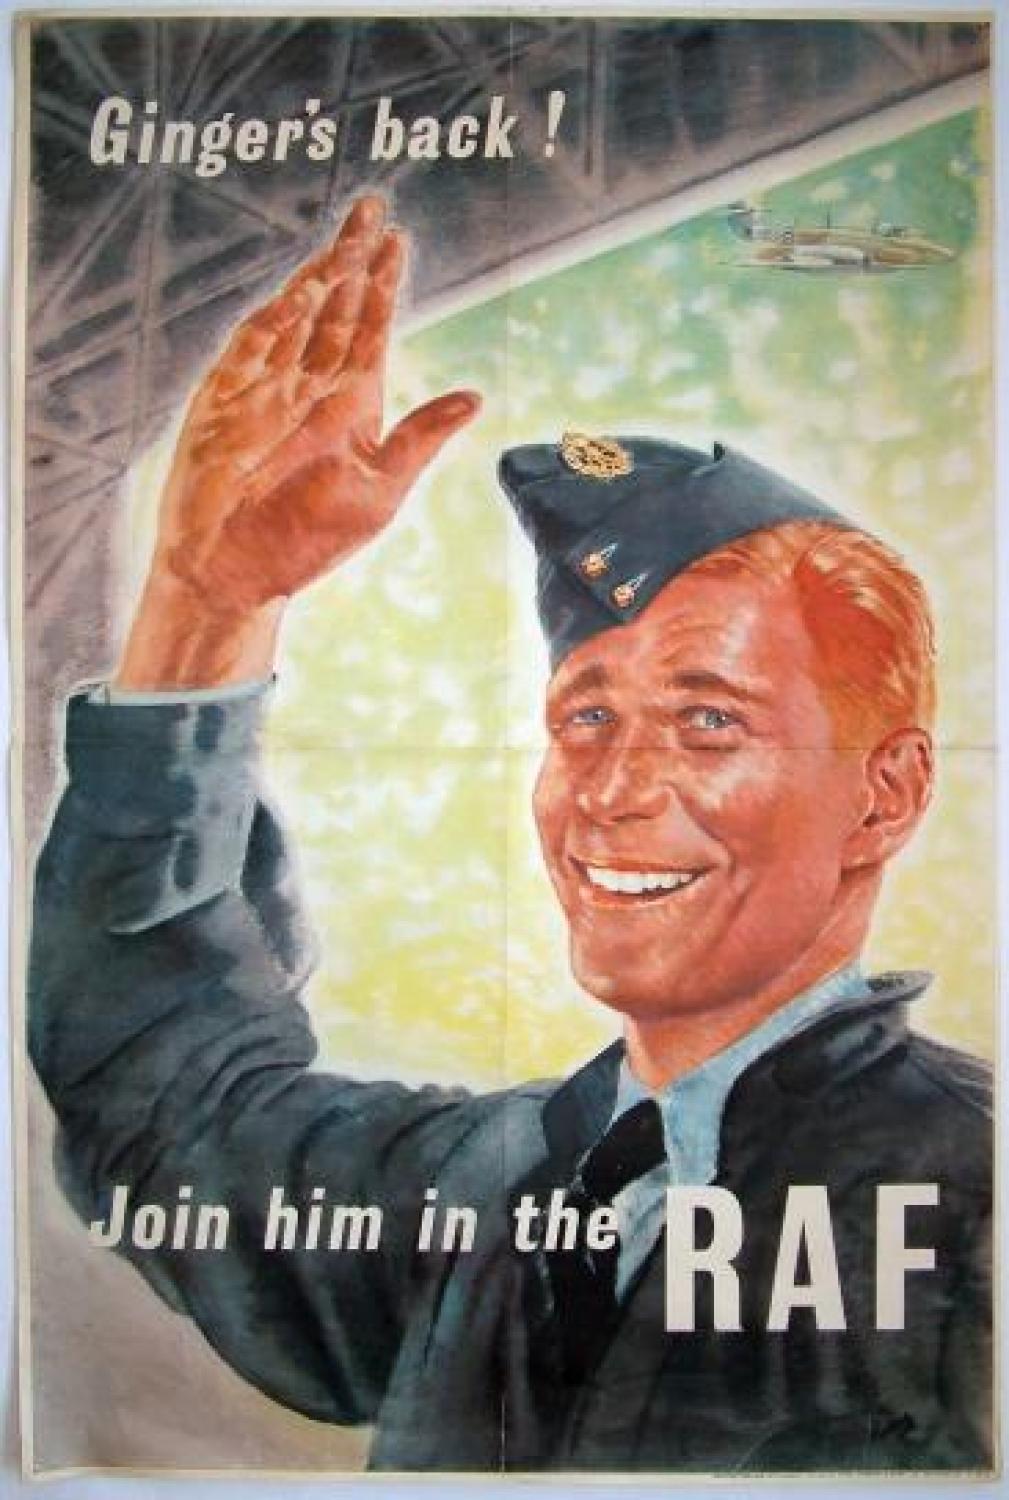 WW2 Recruitment Poster - Ginger's Back!